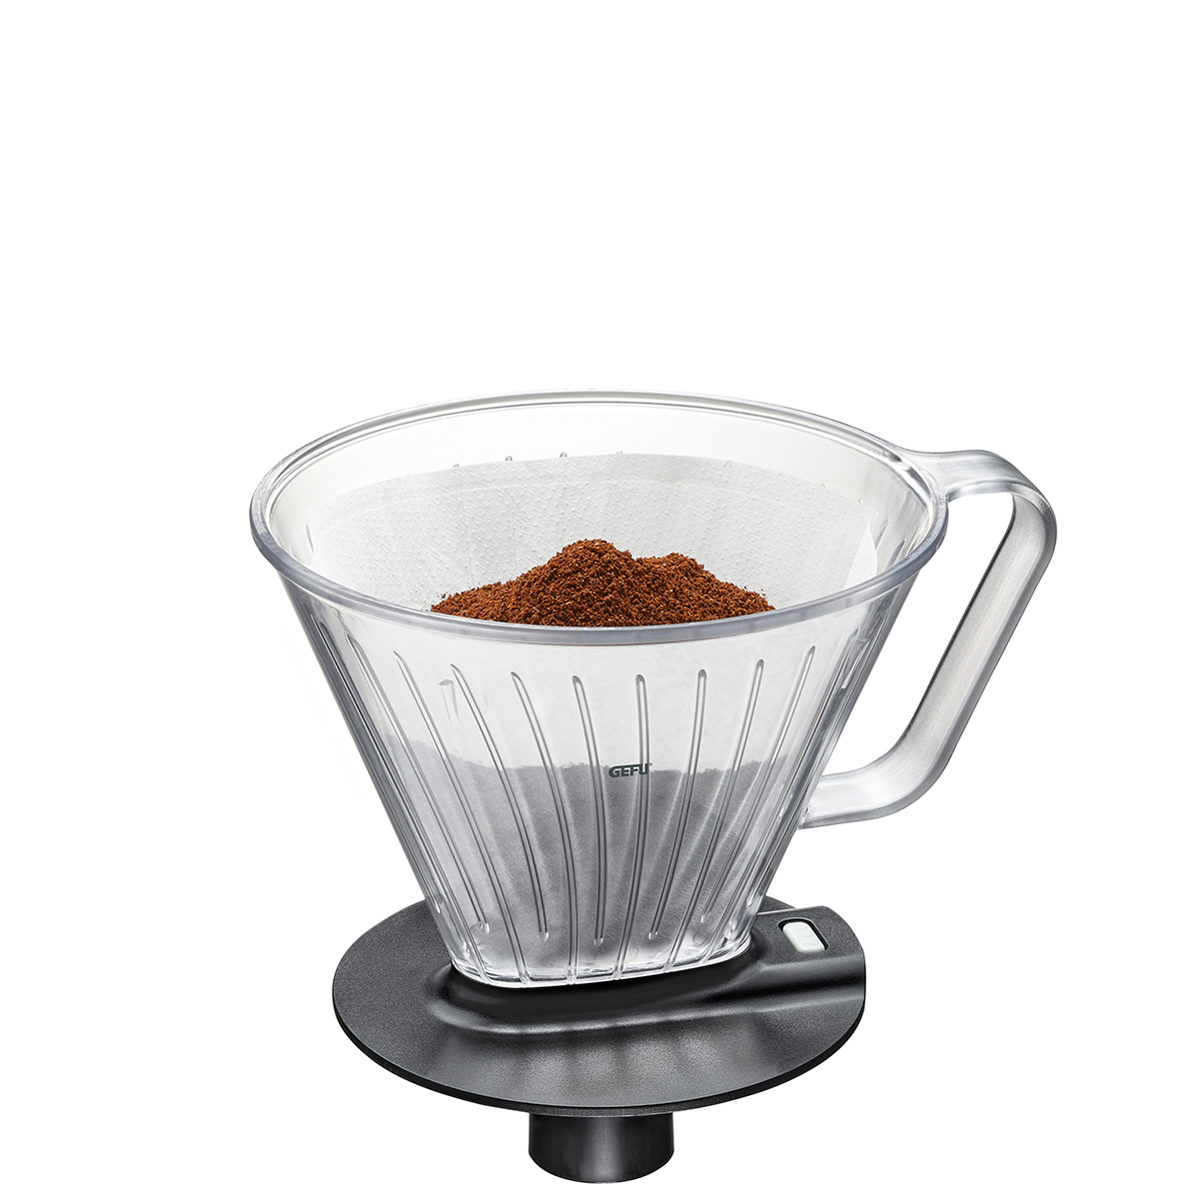 Küchenhelfer Gefu aus Kunststoff in Transparent GEFU Fabiano Kaffee-Filter Gr. 4 aus Kunststoff